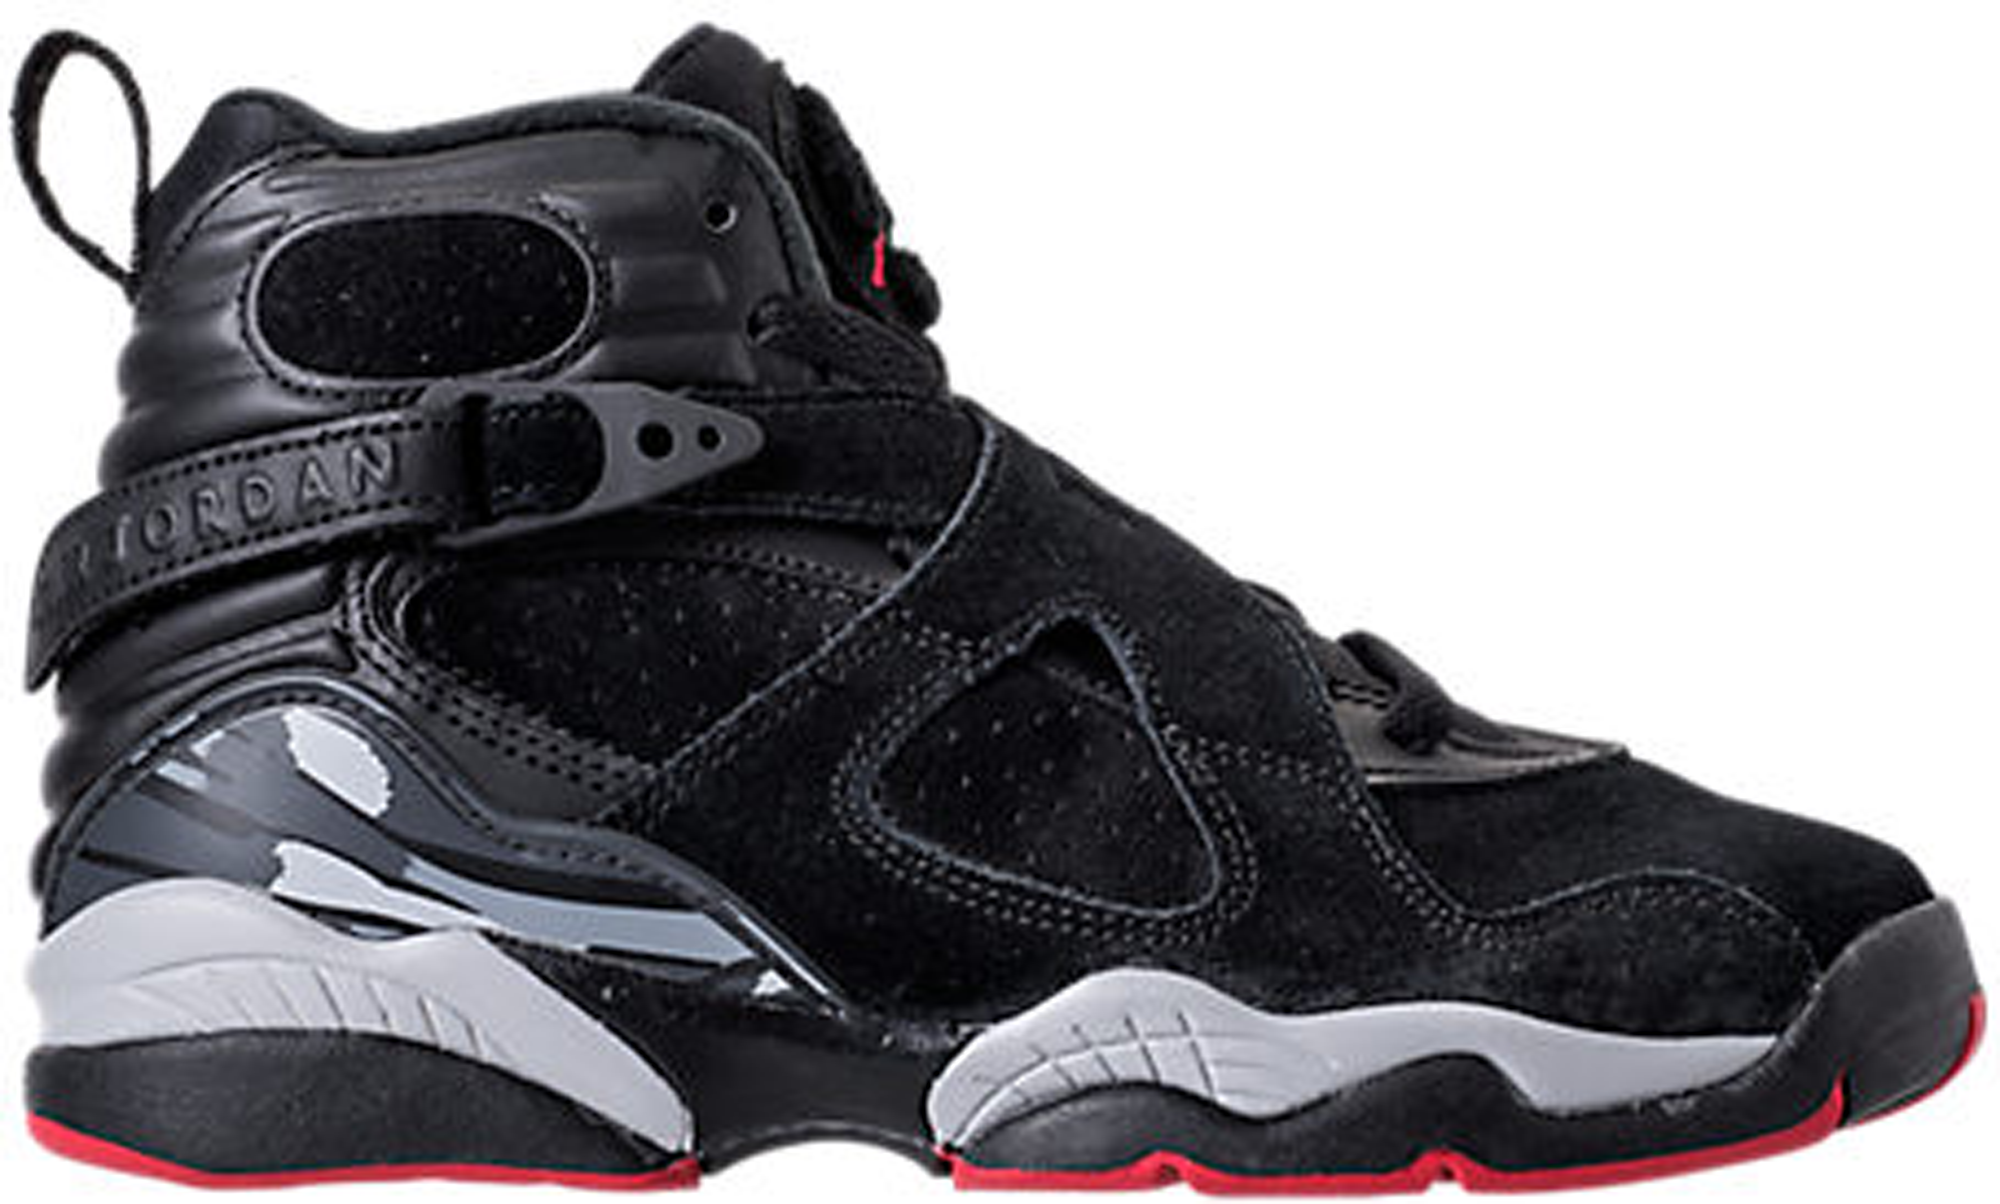 Jordan 8 Retro Black Cement (GS) - 305368-022